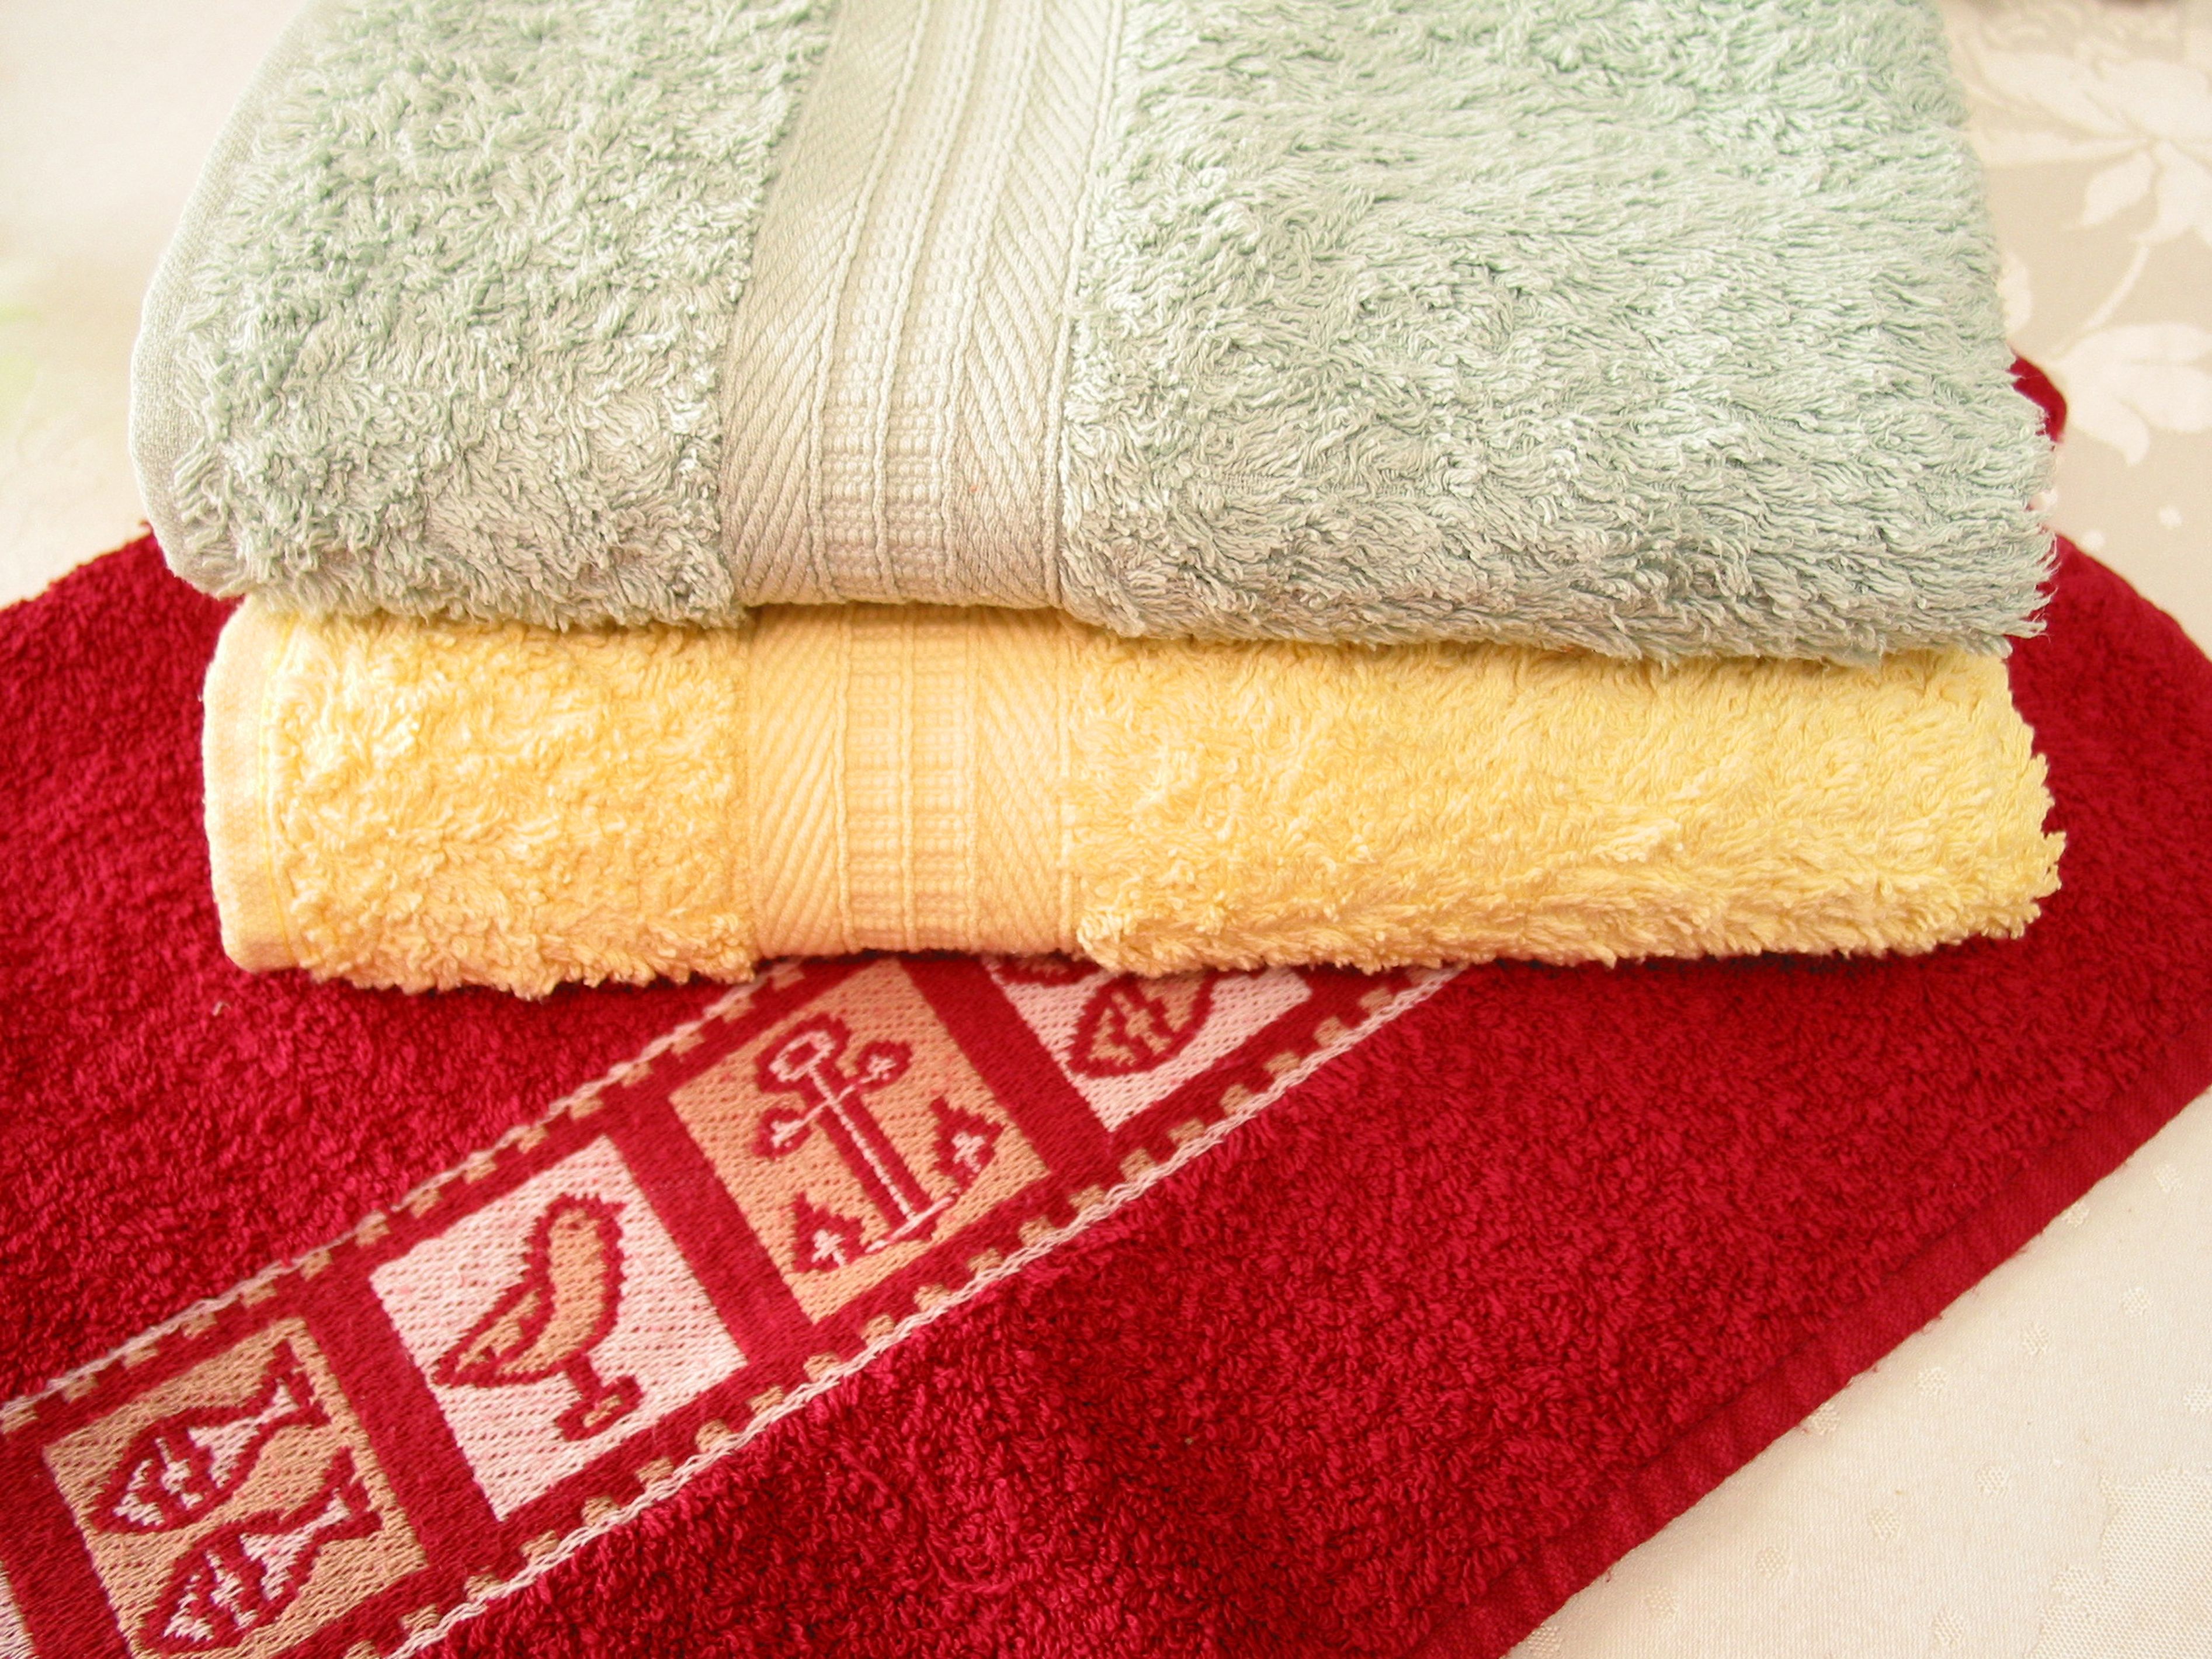 Zapomnij o ręcznikach śmierdzących stęchlizną. Fot. Kapif.jpg